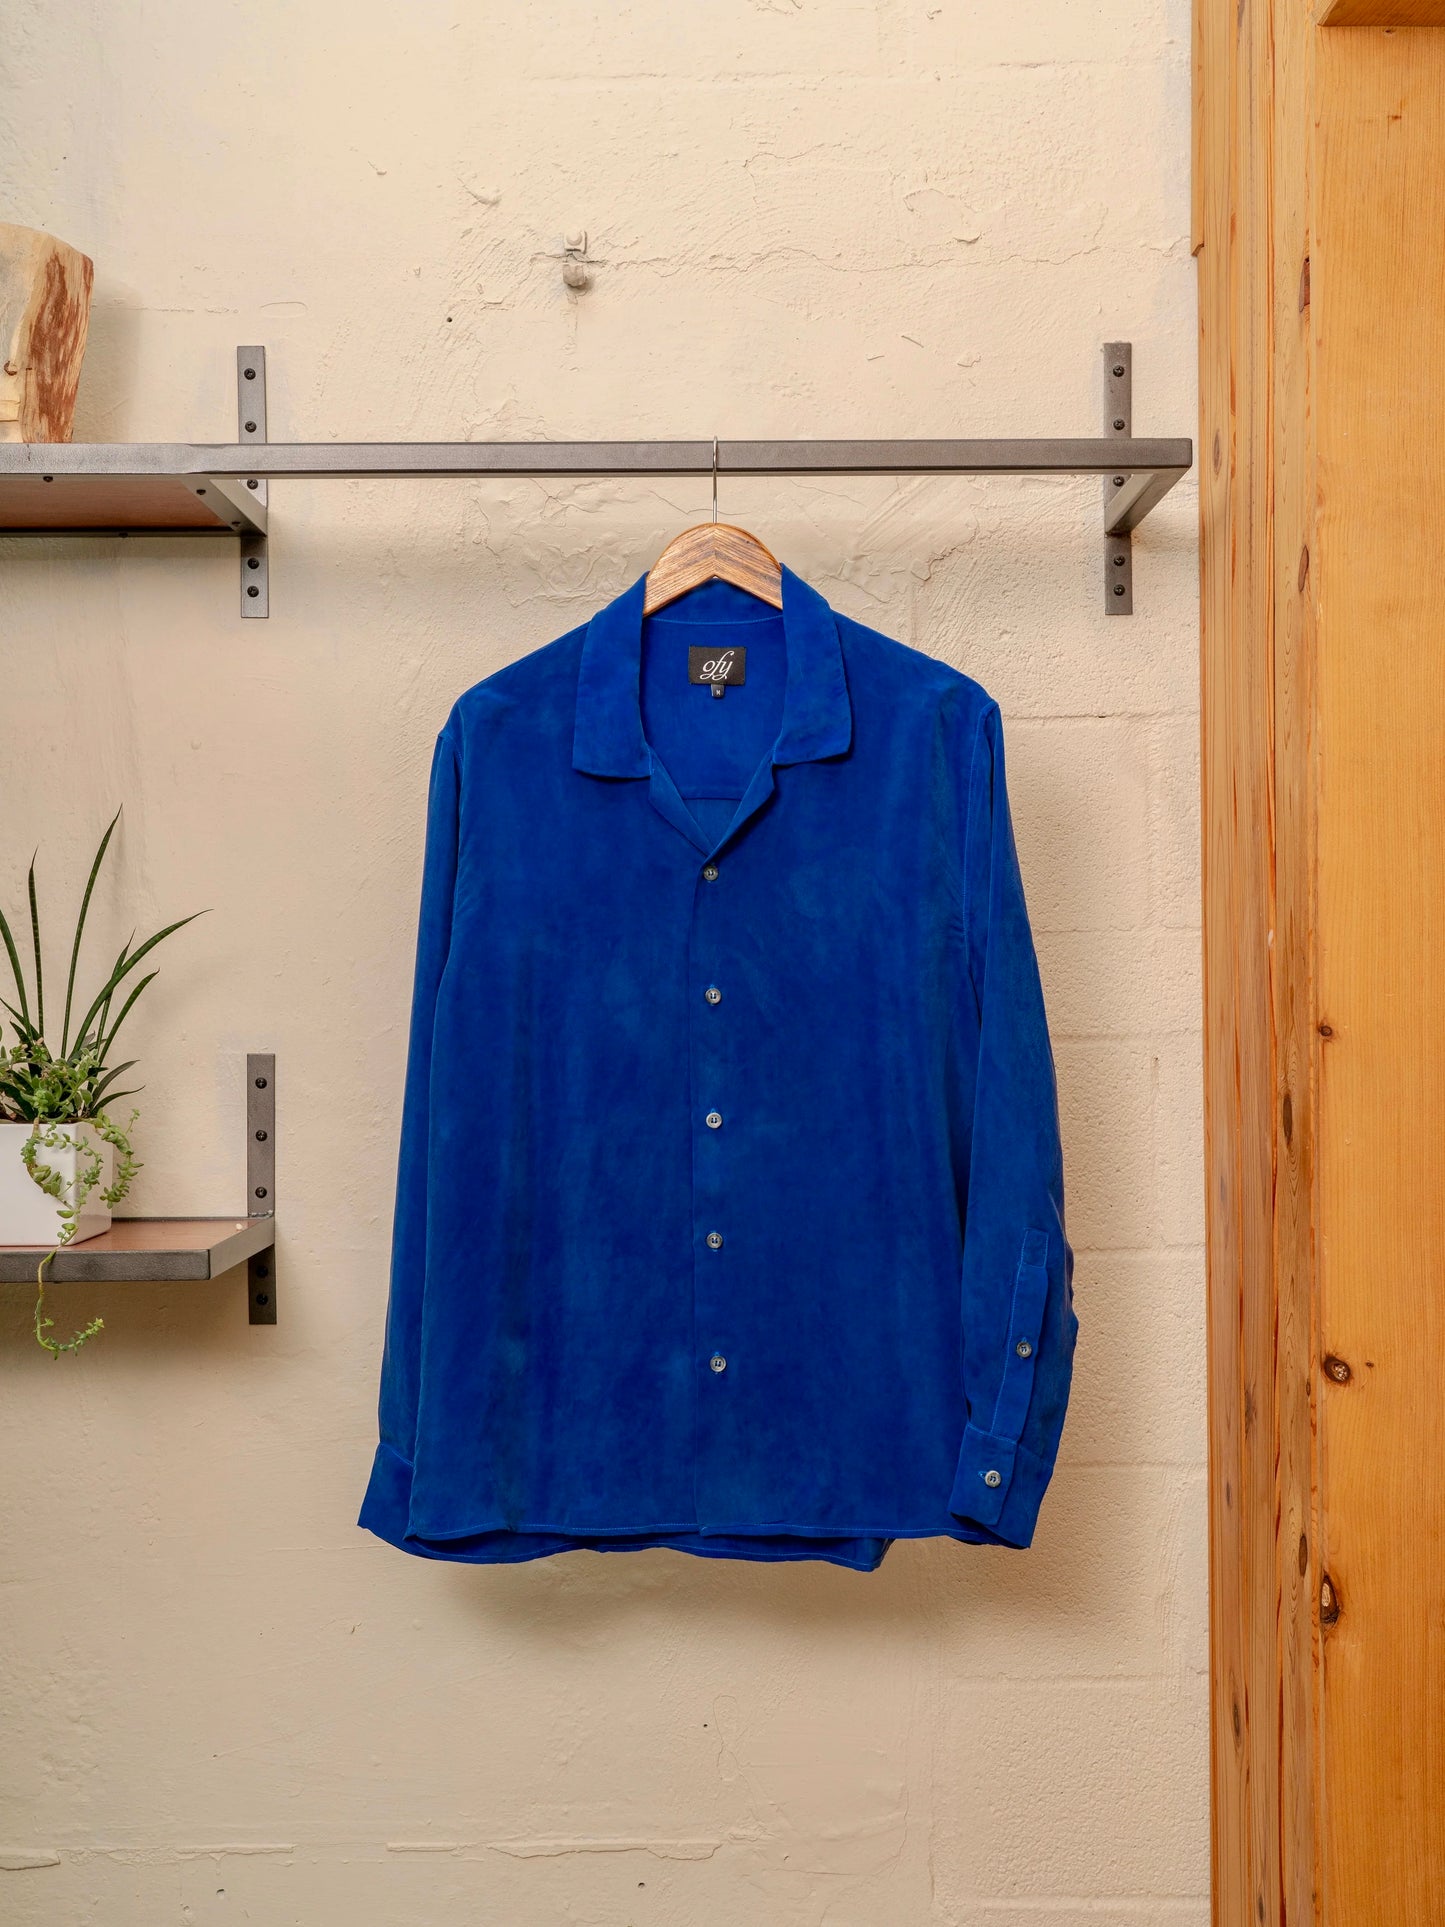 Iggy L/S Shirt - Bluing